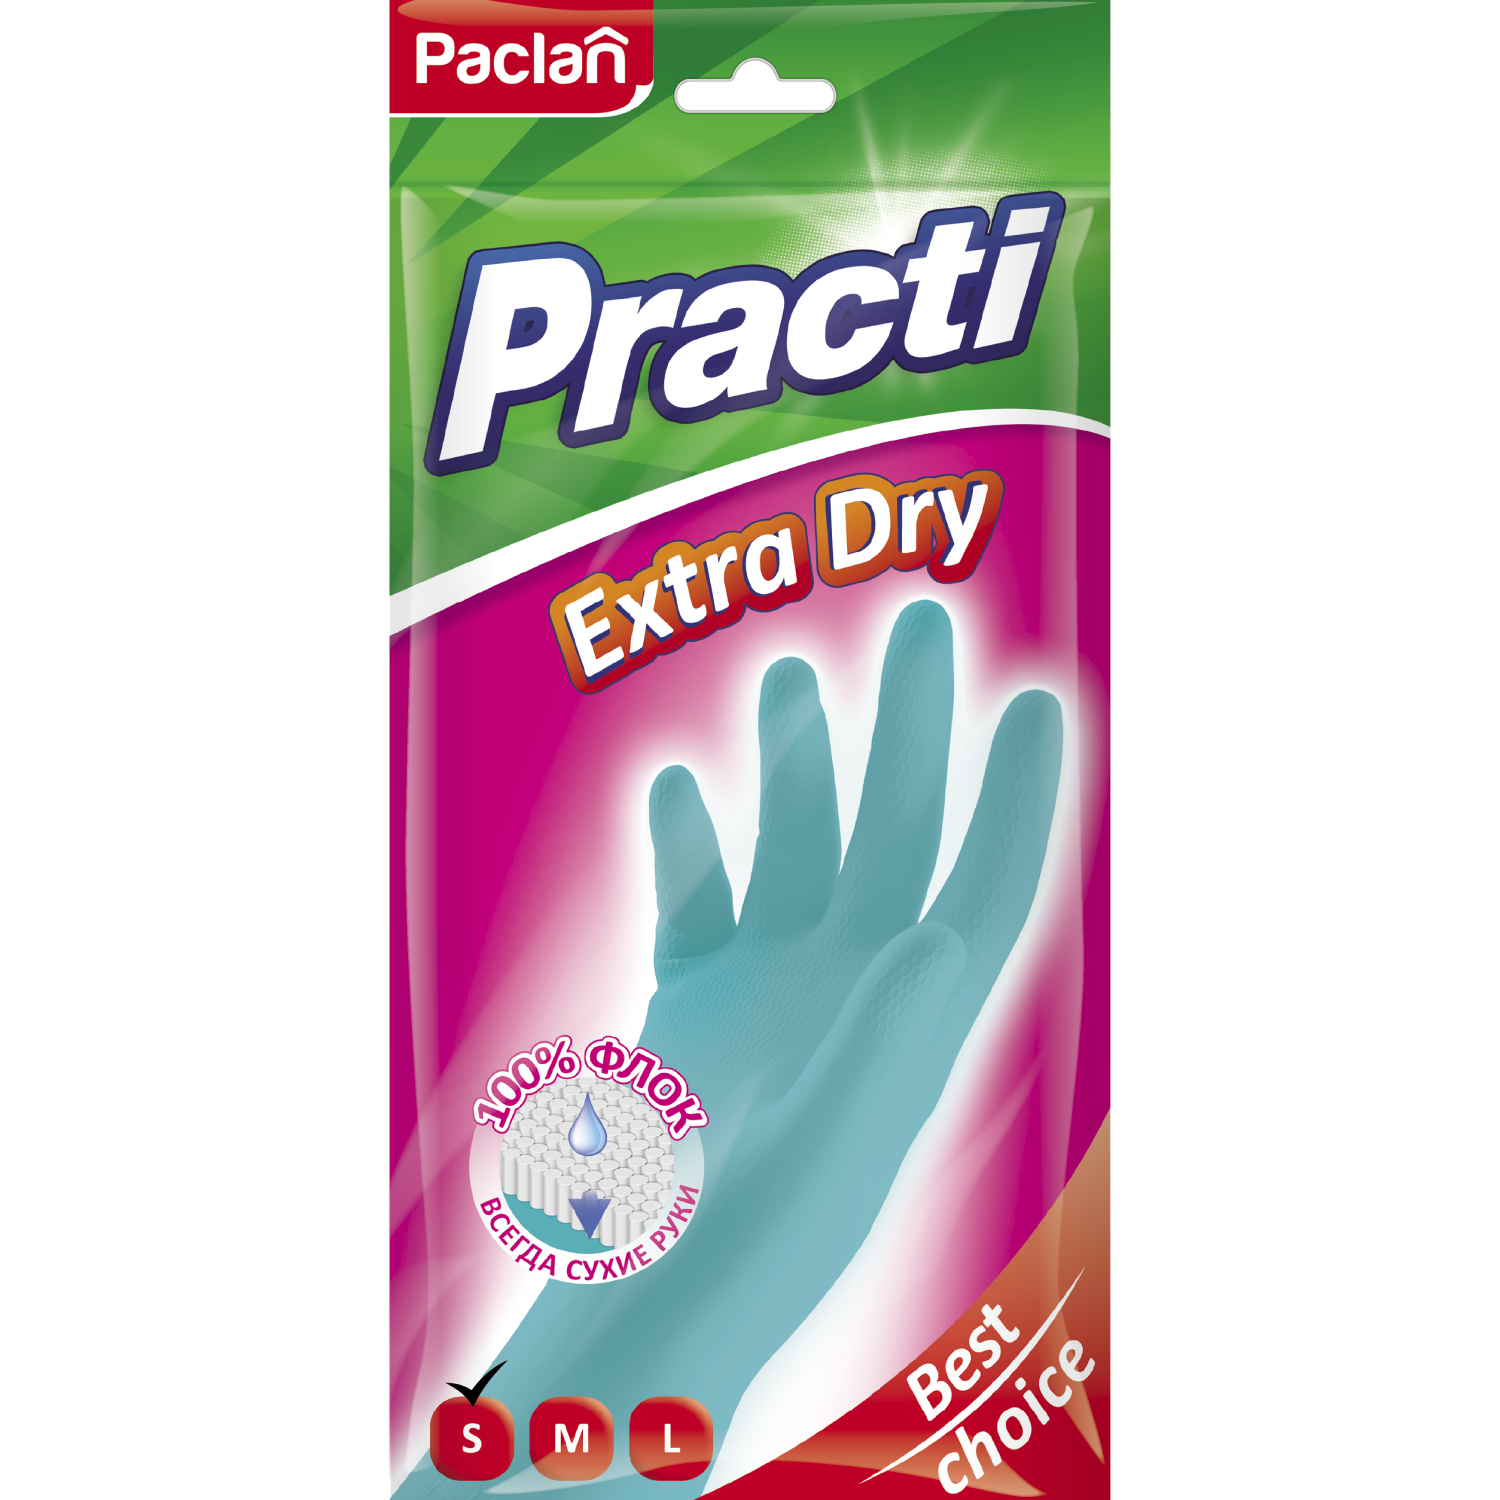 средства для уборки paclan practi extra dry перчатки резиновые Перчатки резиновые Paclan Extra dry